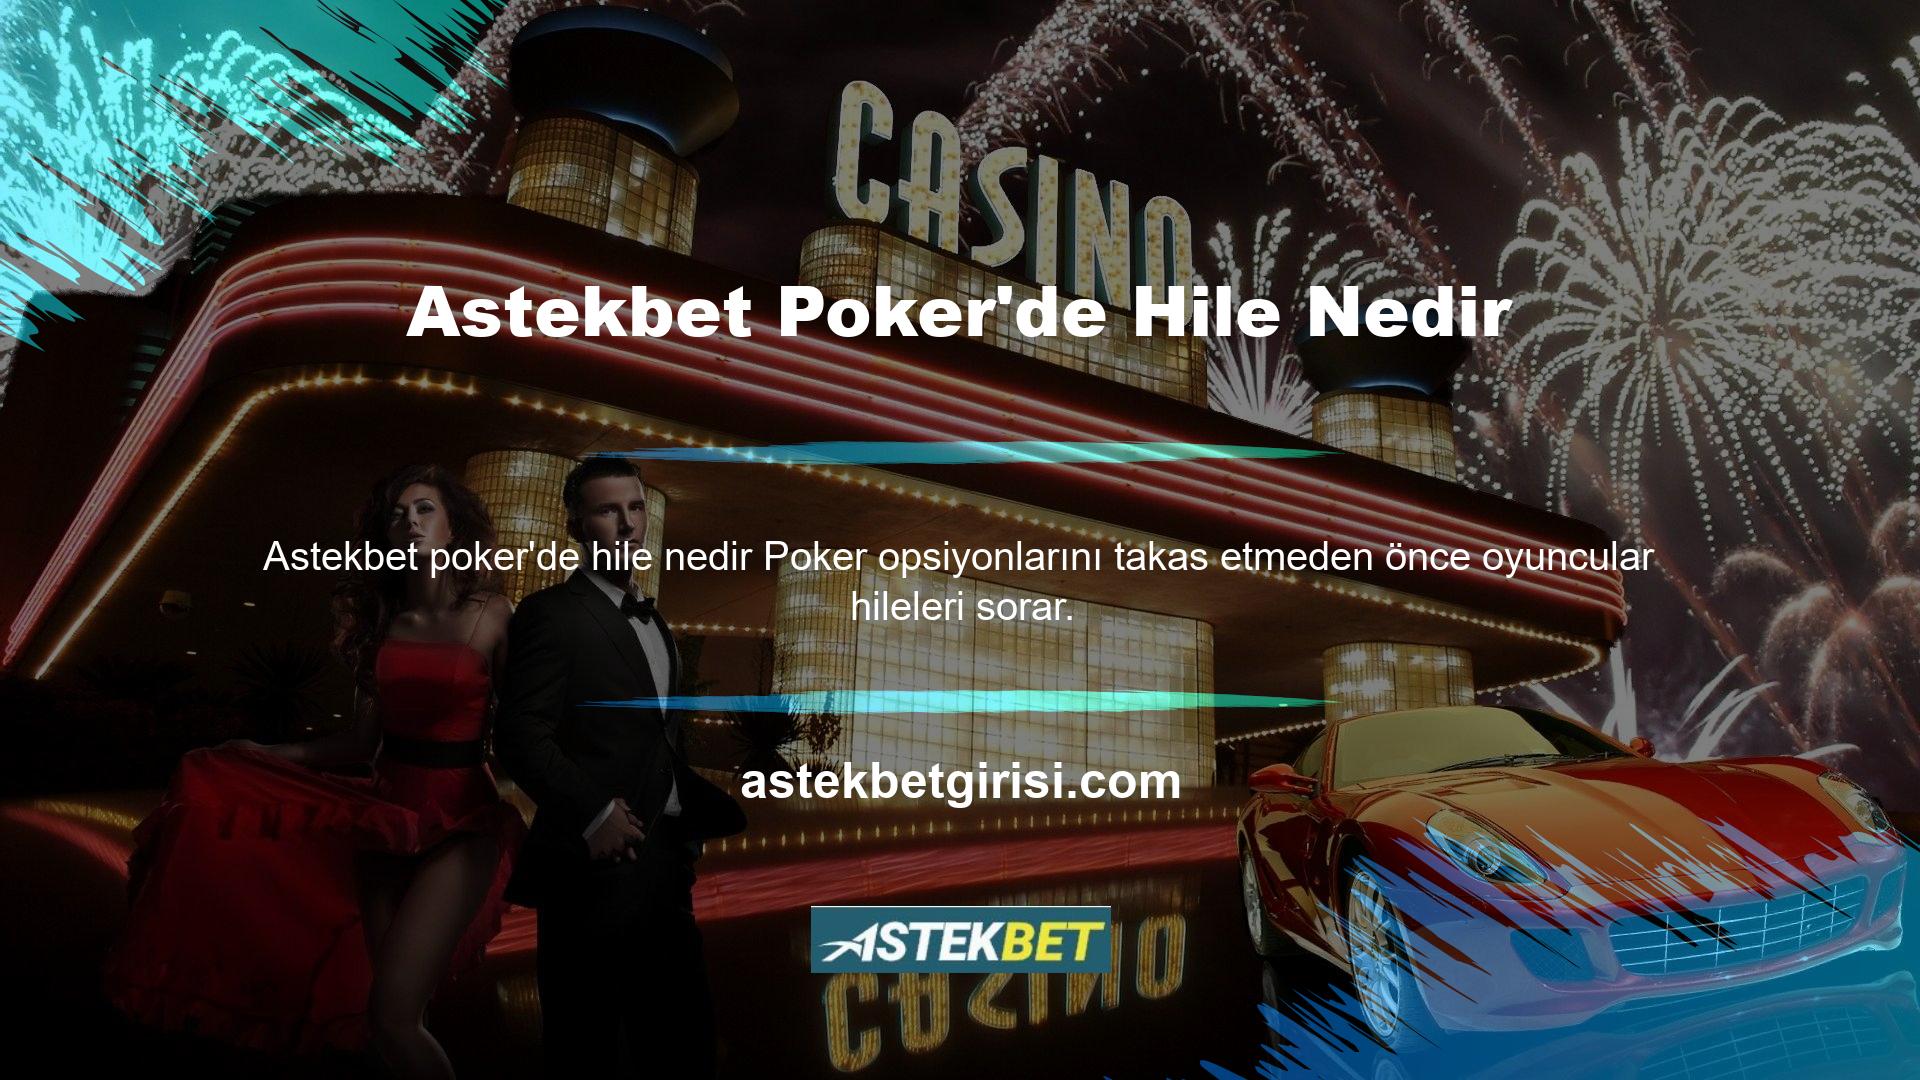 Astekbet Poker'de hile olup olmadığı sorulduğunda site hayır dedi